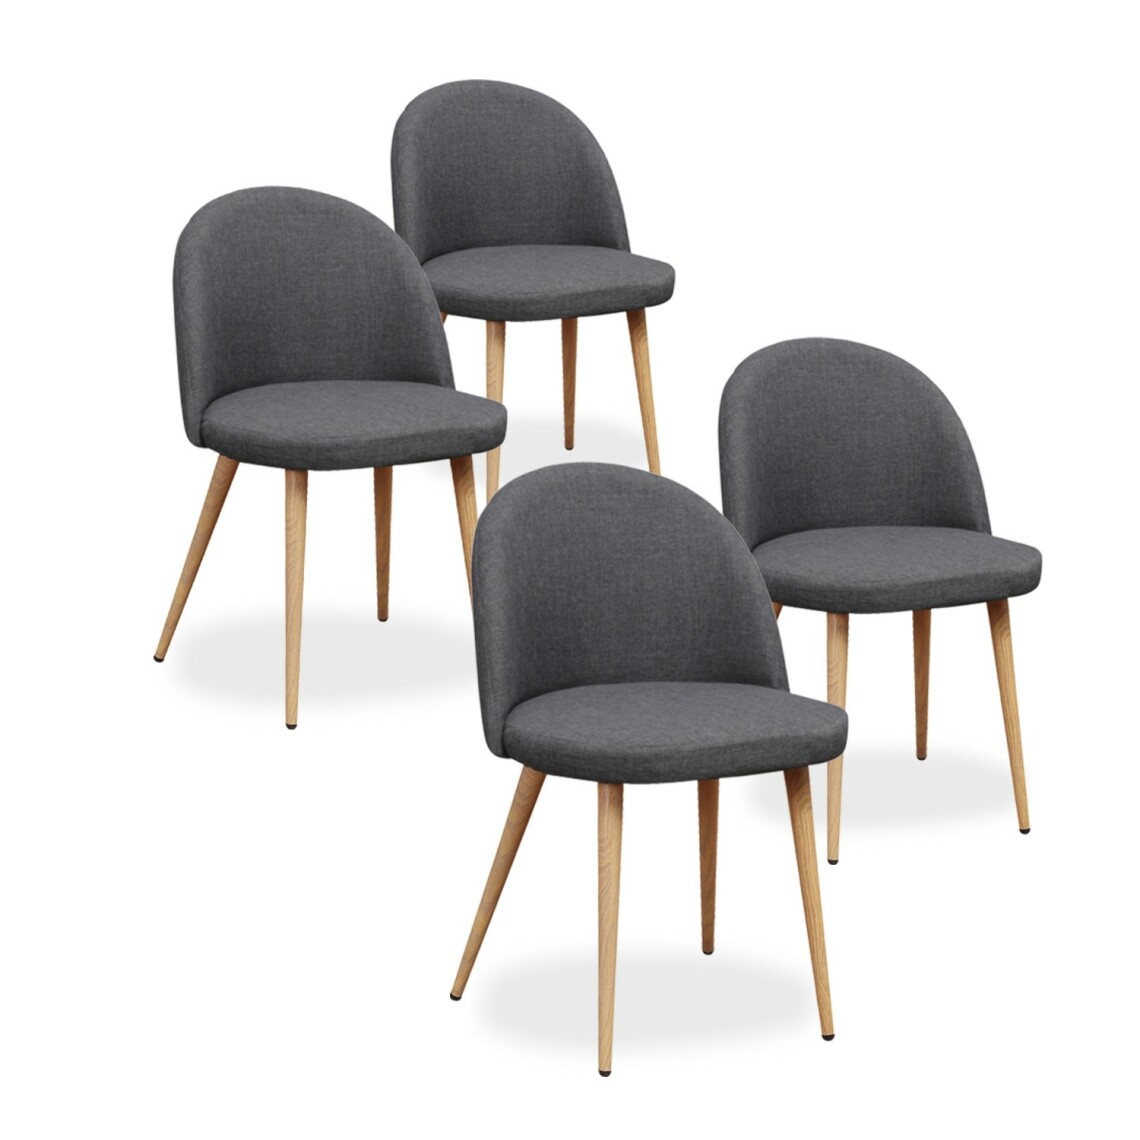 marque generique - Lot de 4 chaises scandinaves Cecilia tissu Gris foncé - Chaises